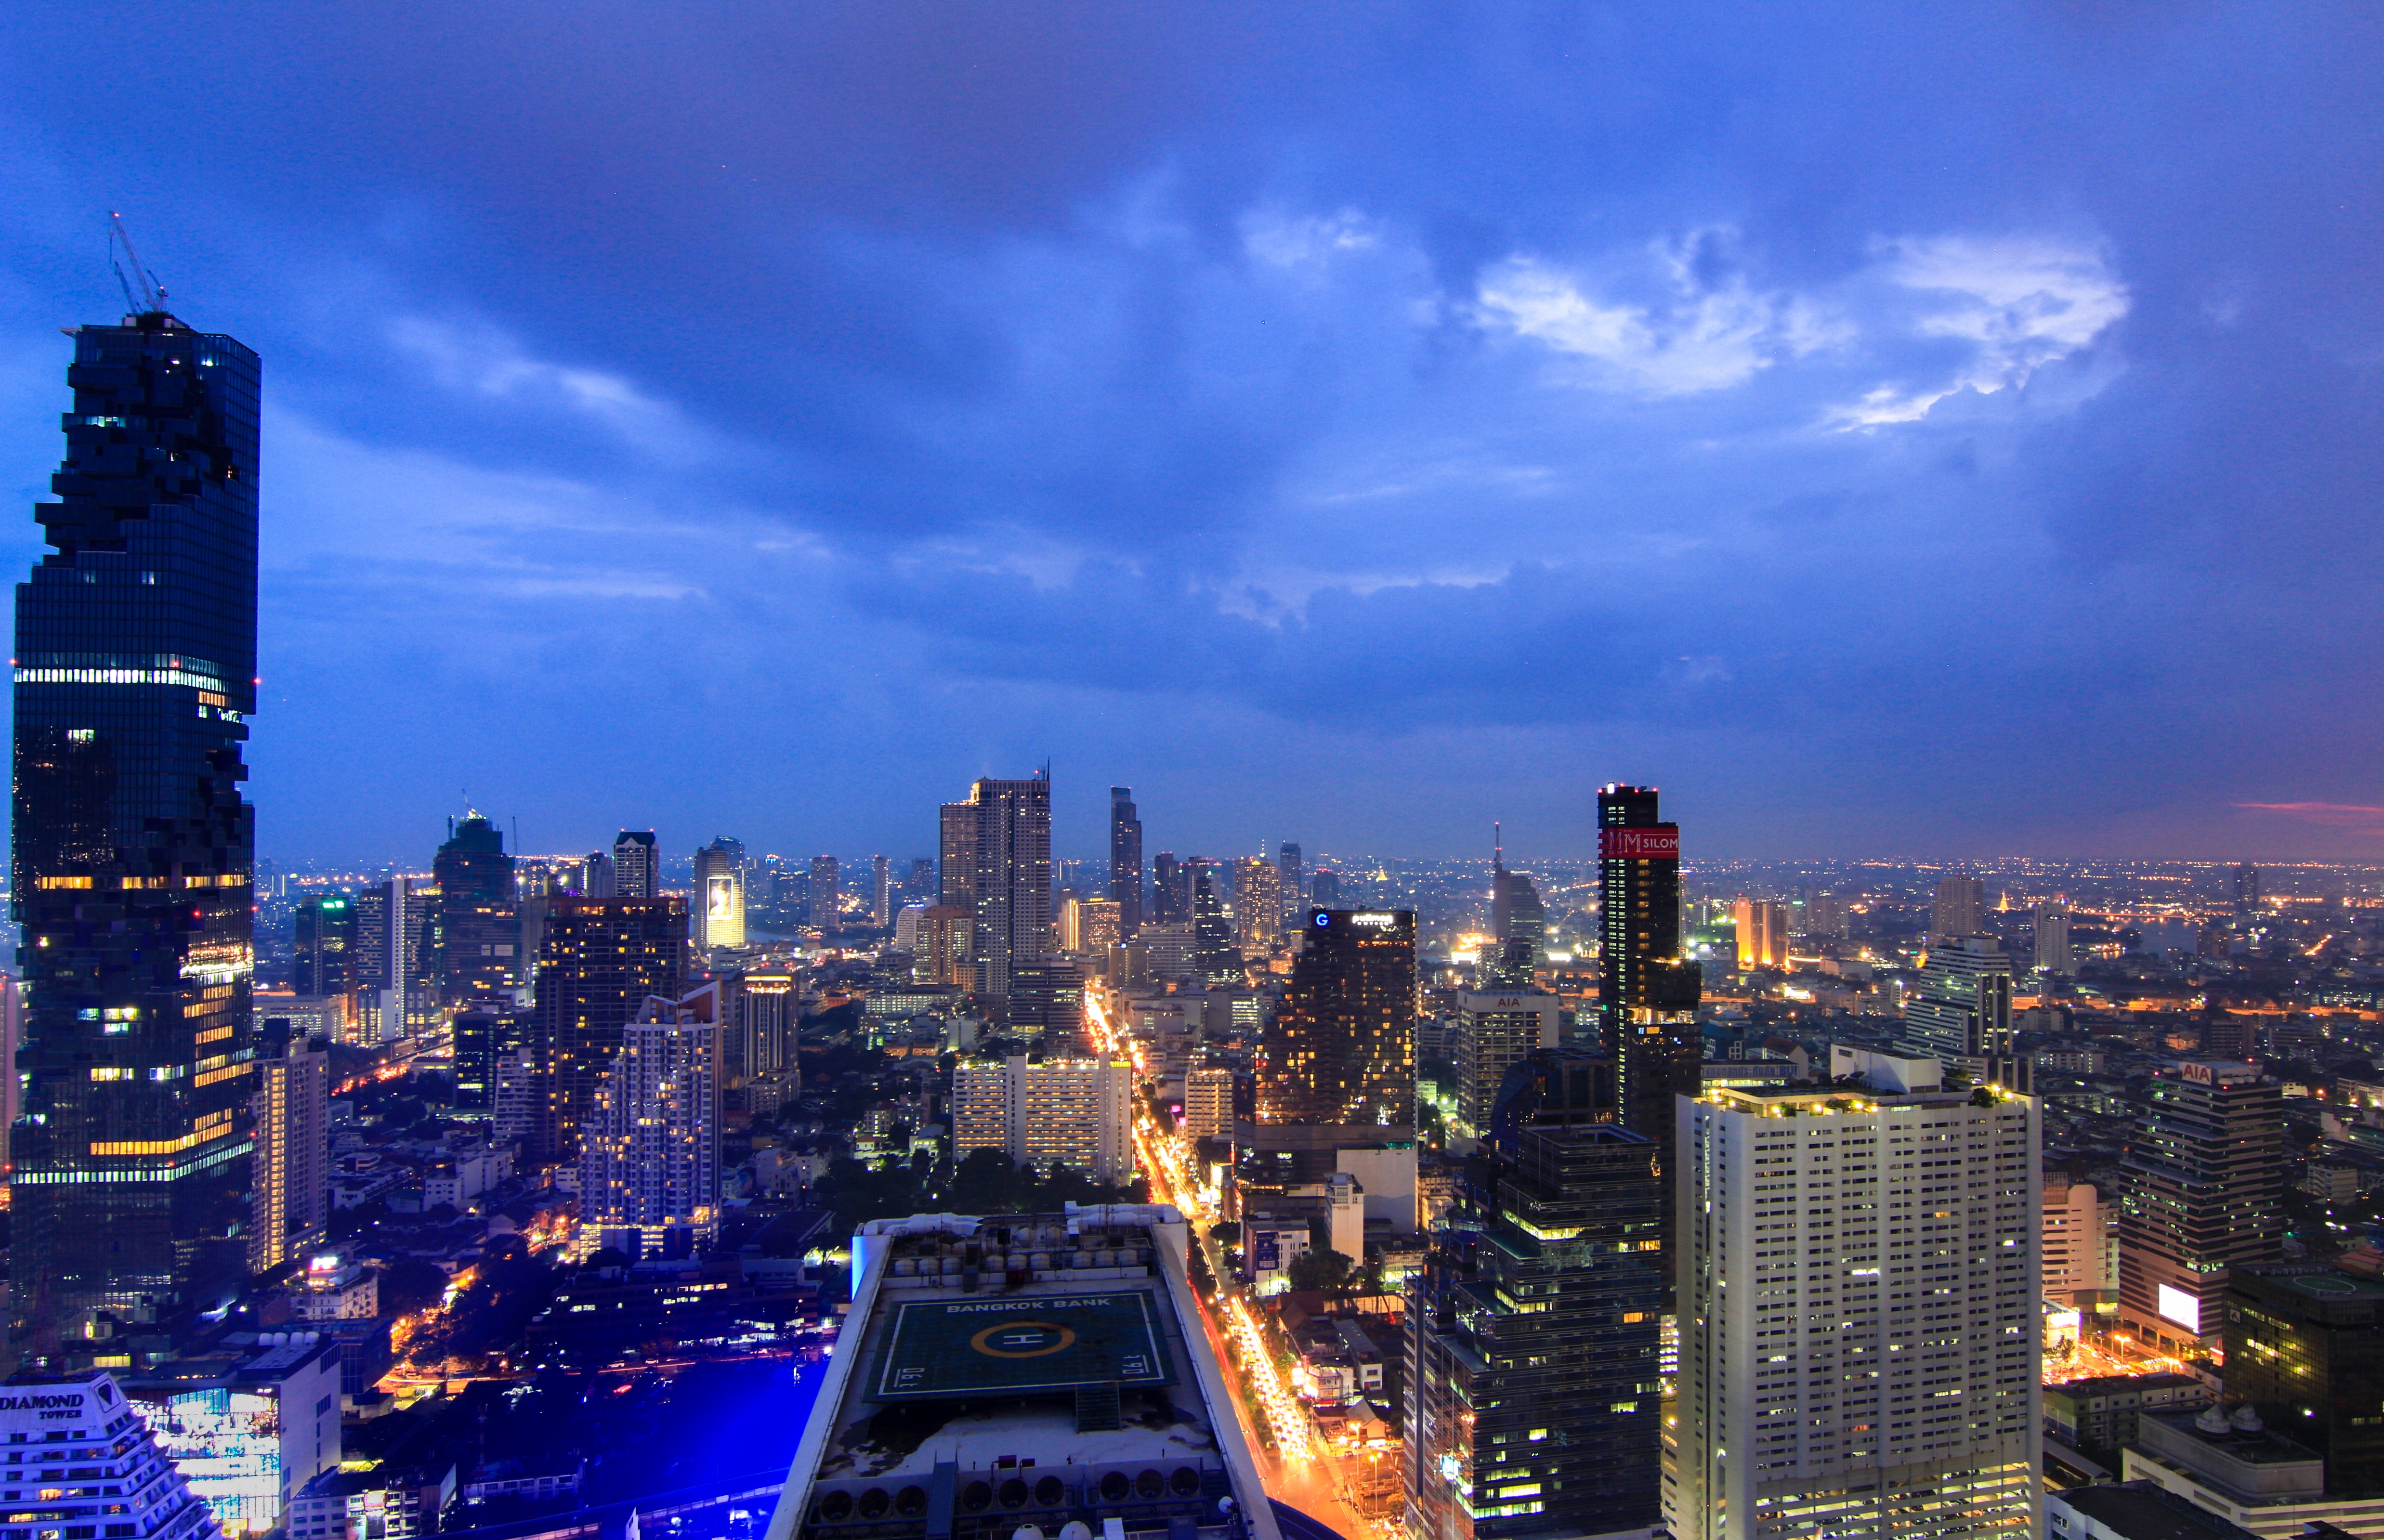 Скачать картинку Города, Бангкок, Сделано Человеком в телефон бесплатно.